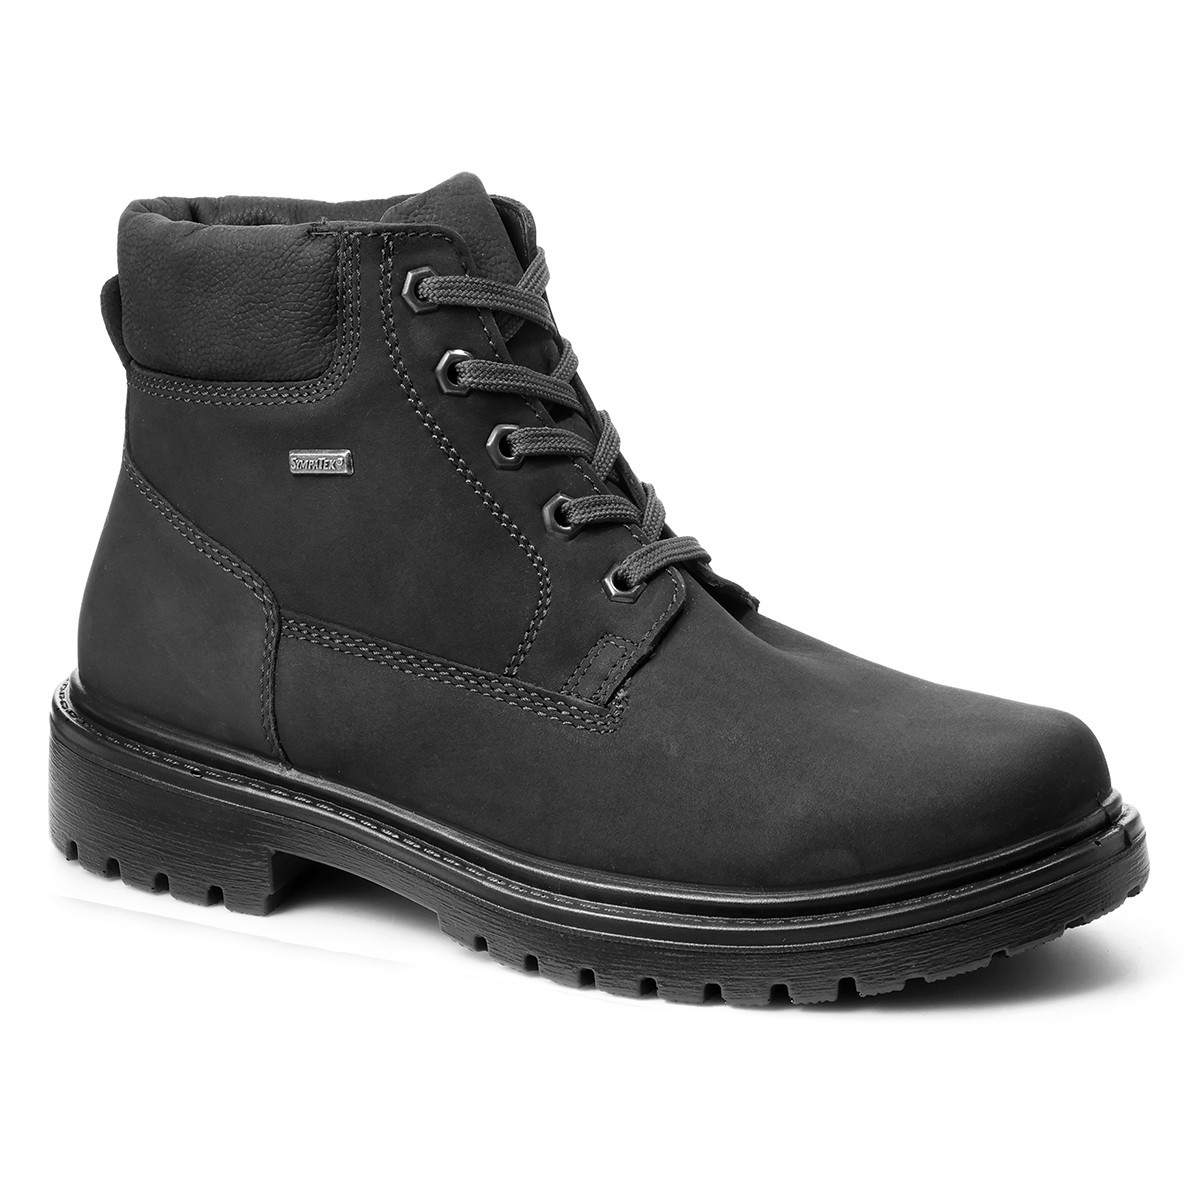 Мужские ботинки на шнуровке Alpina, Jomos, черные фото